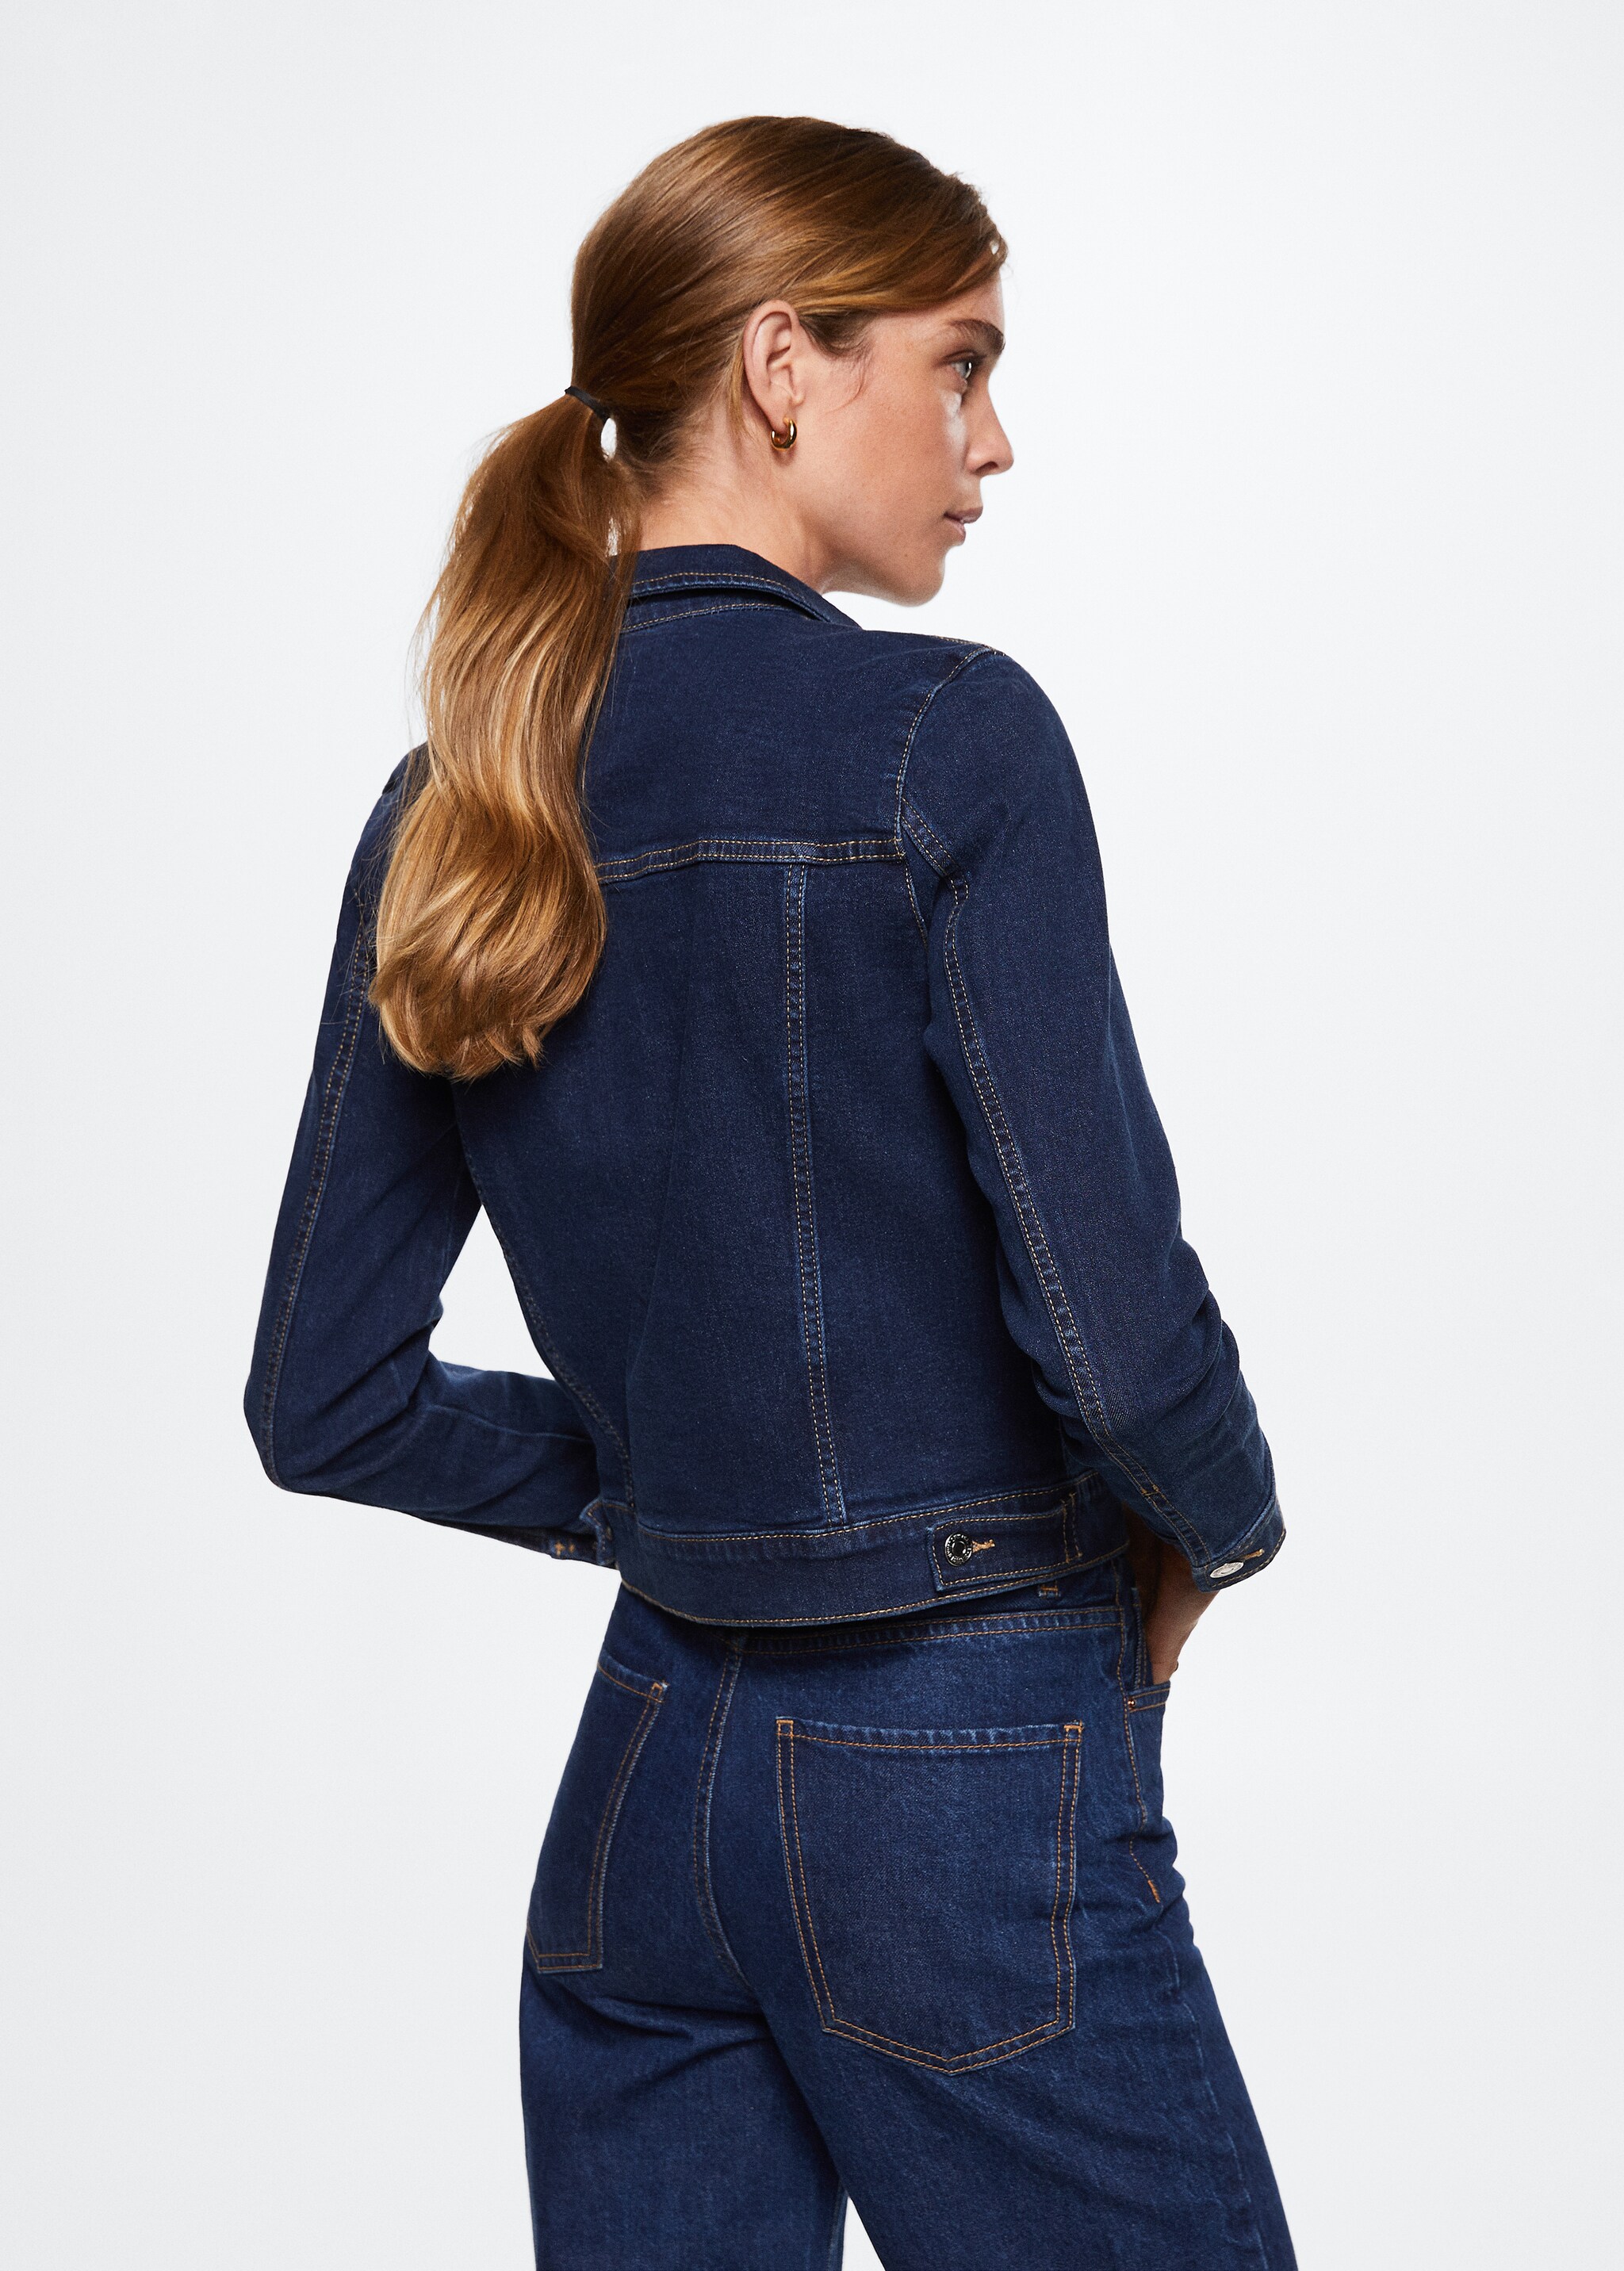 Jeansjacke aus Baumwolle - Rückseite des Artikels